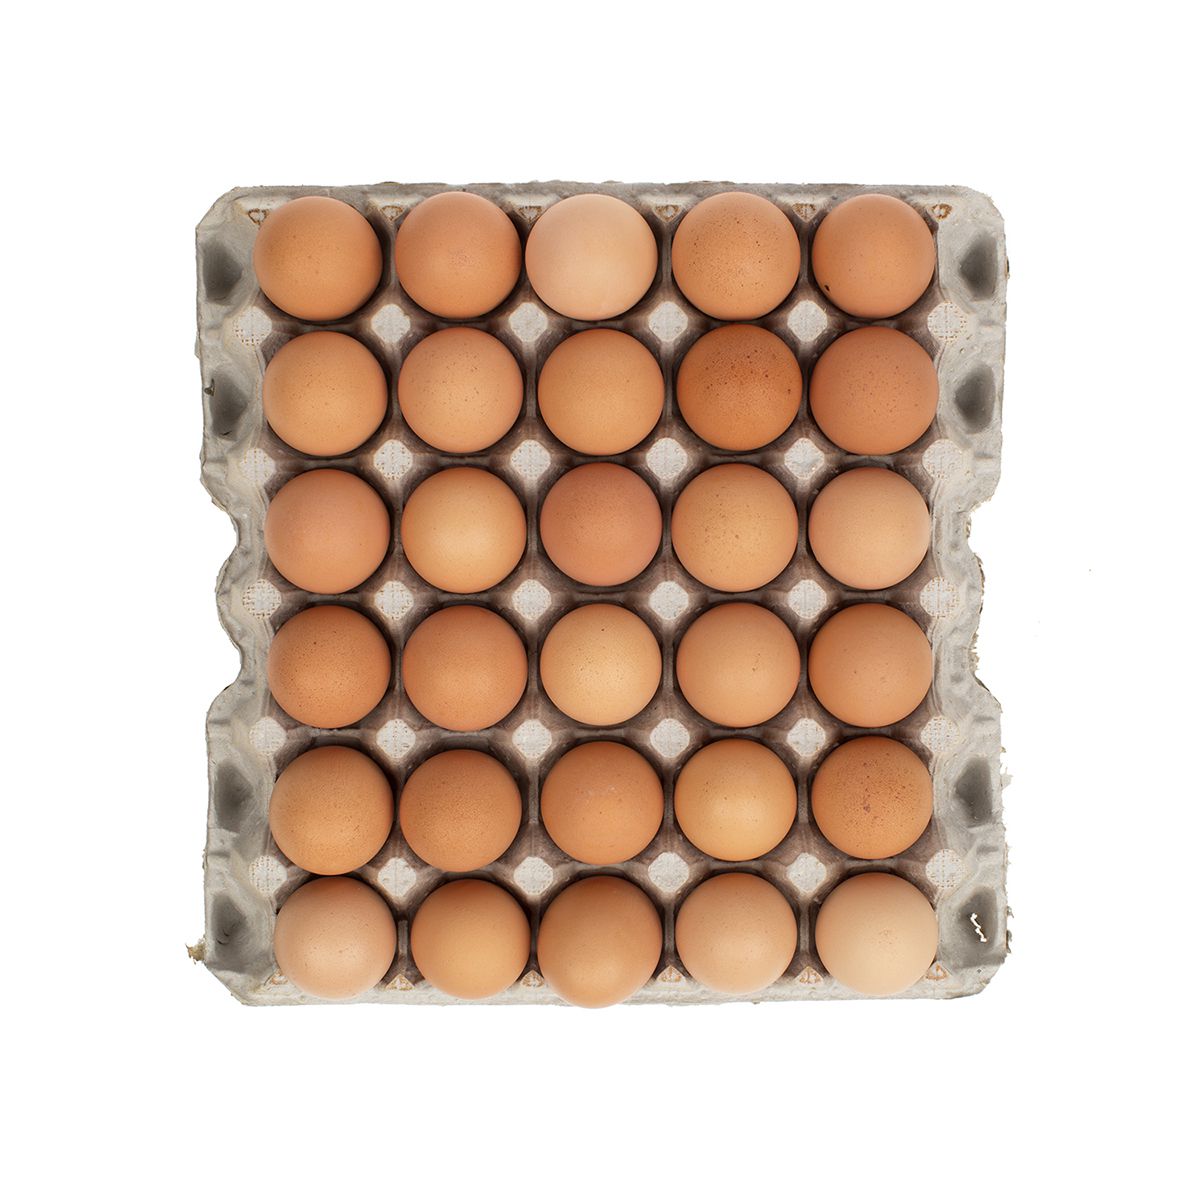 BoxNCase Large Brown Free Range Loose Eggs Box